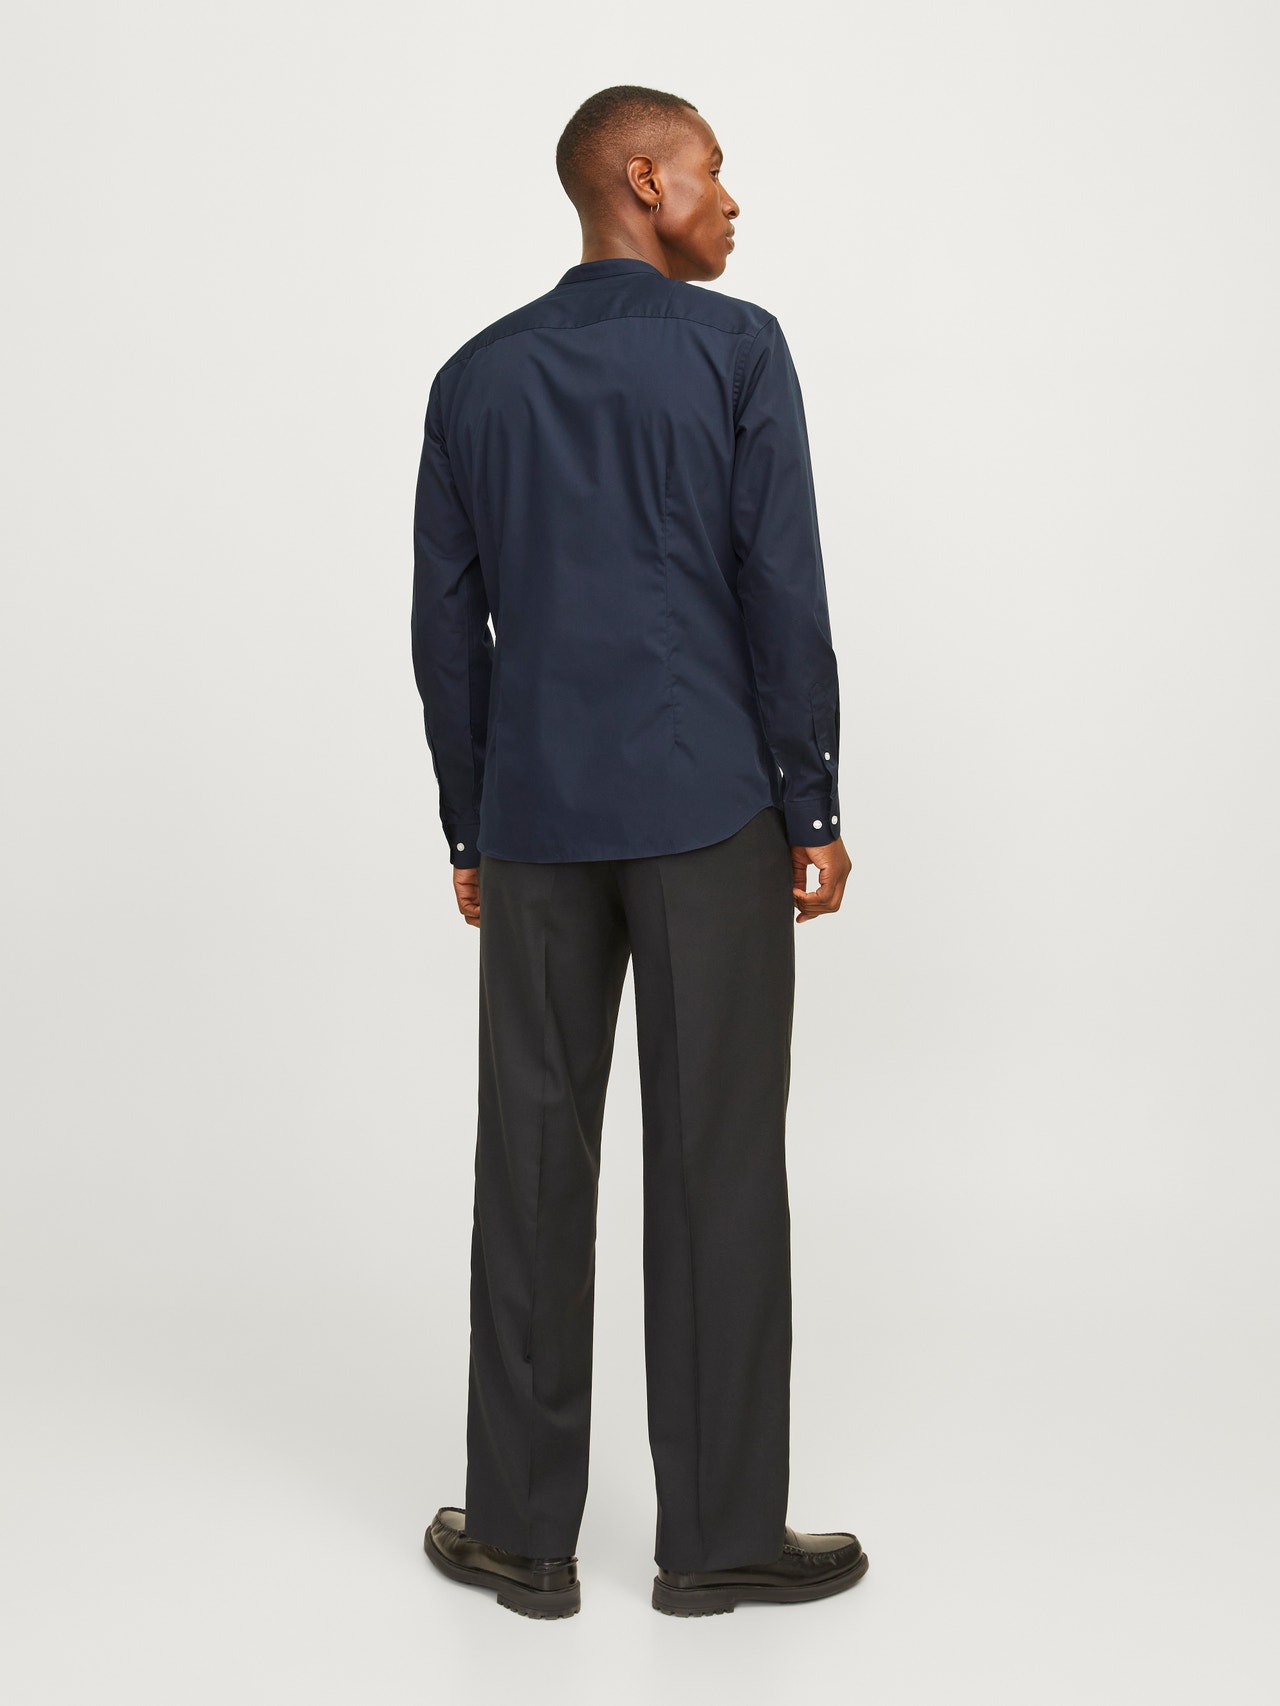 Jack & Jones Slim Fit Uformell skjorte -Navy Blazer - 12205921